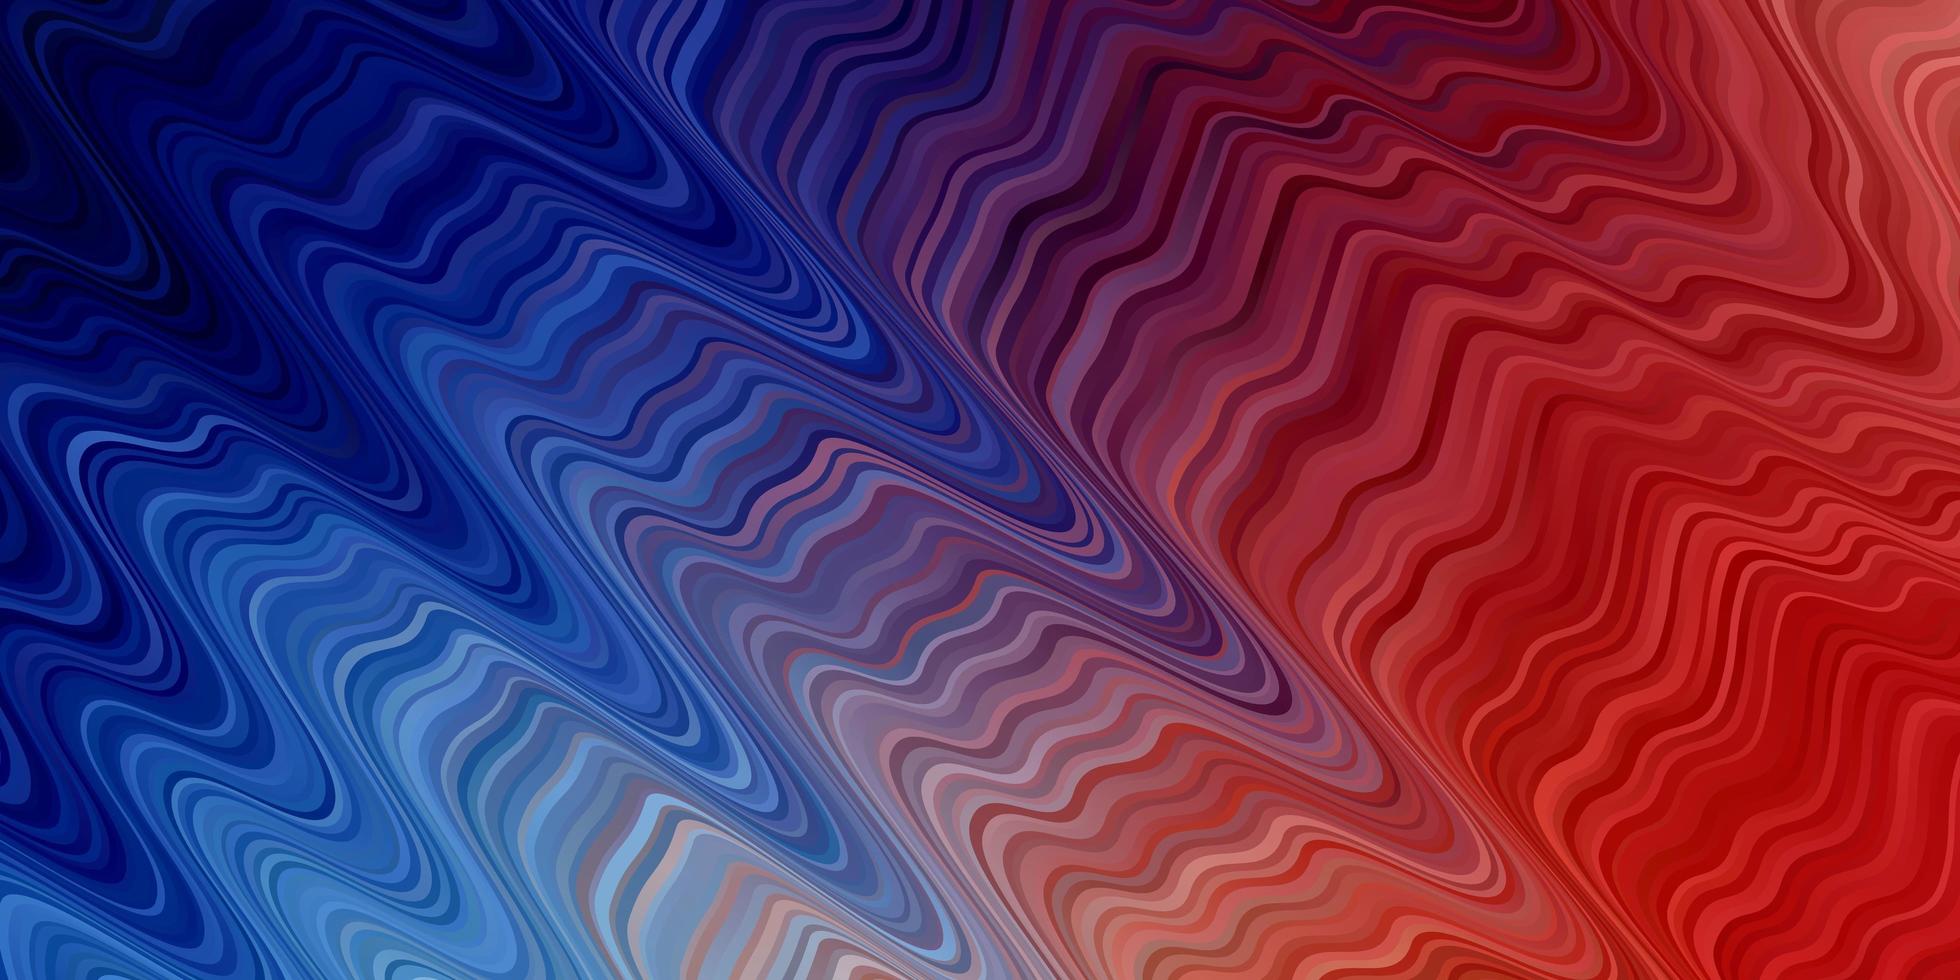 ljusblå, röd bakgrund med vågiga linjer. vektor